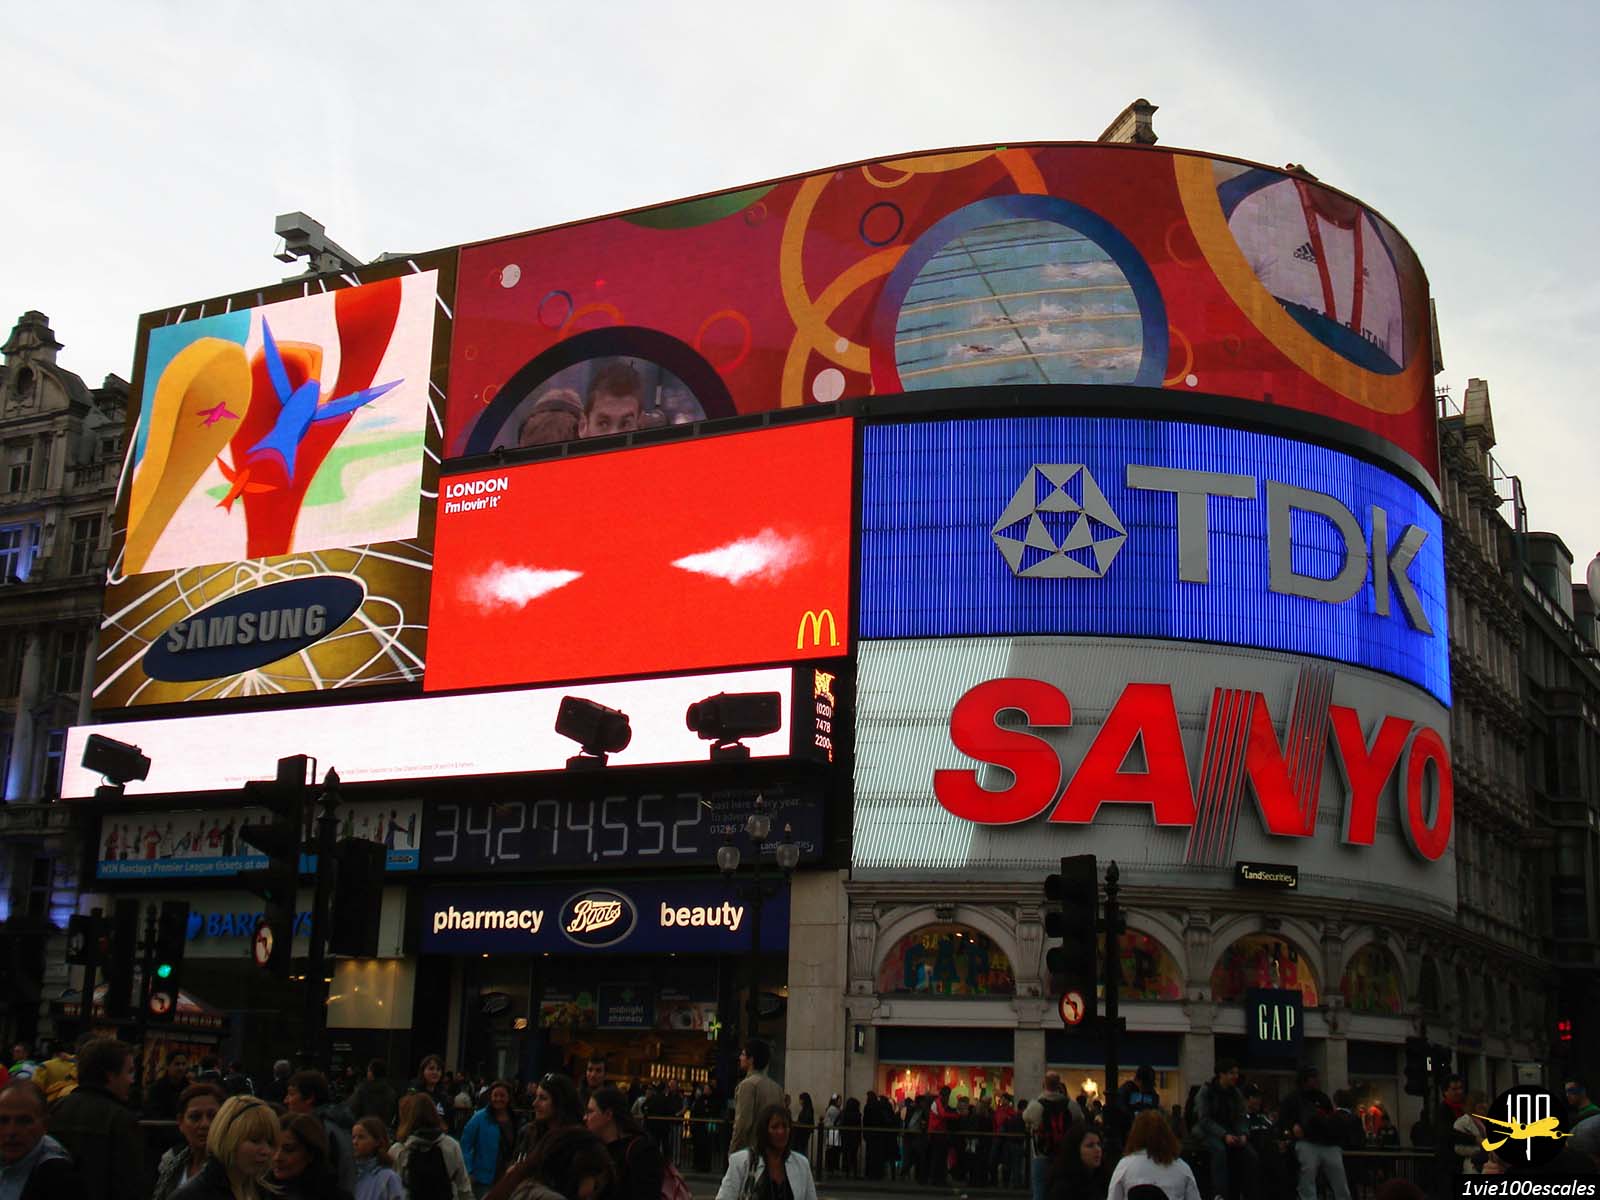 Les enseignes lumineuses de publicité de Piccadilly Circus à Londres